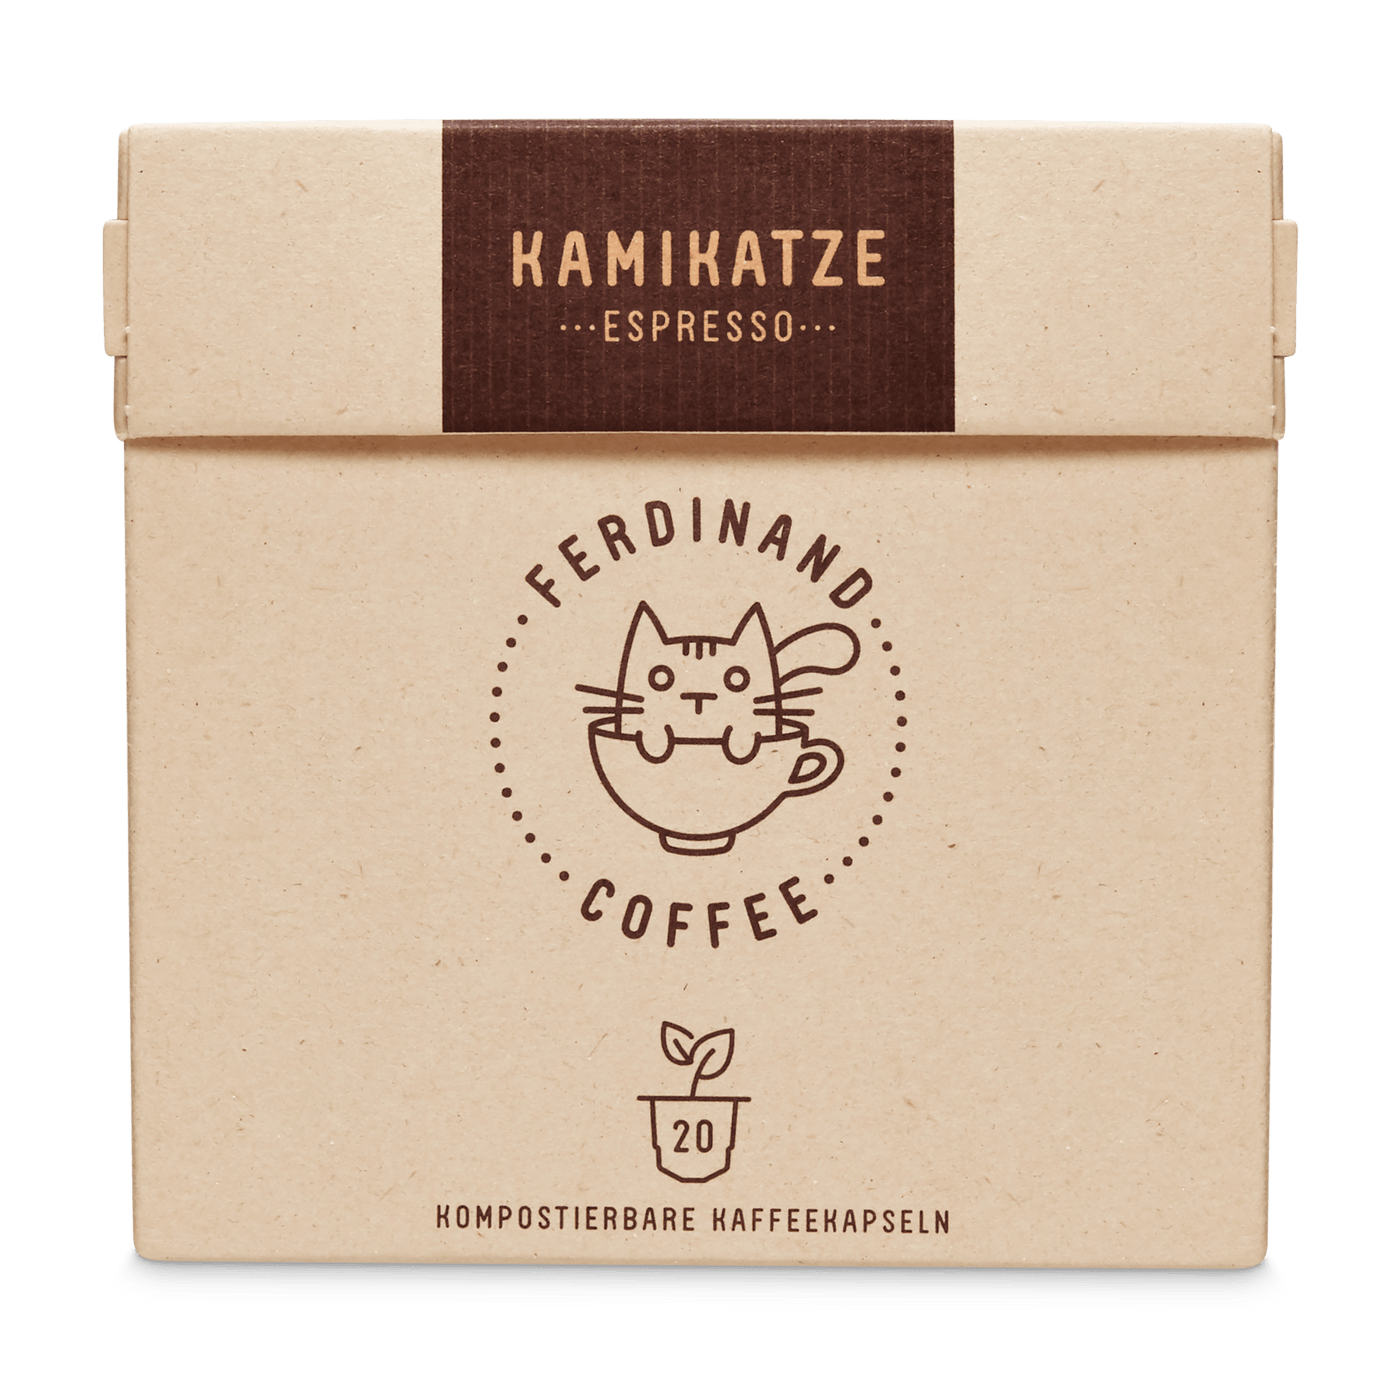 Restholzkapseln - Espresso Ferdinand-Coffee 